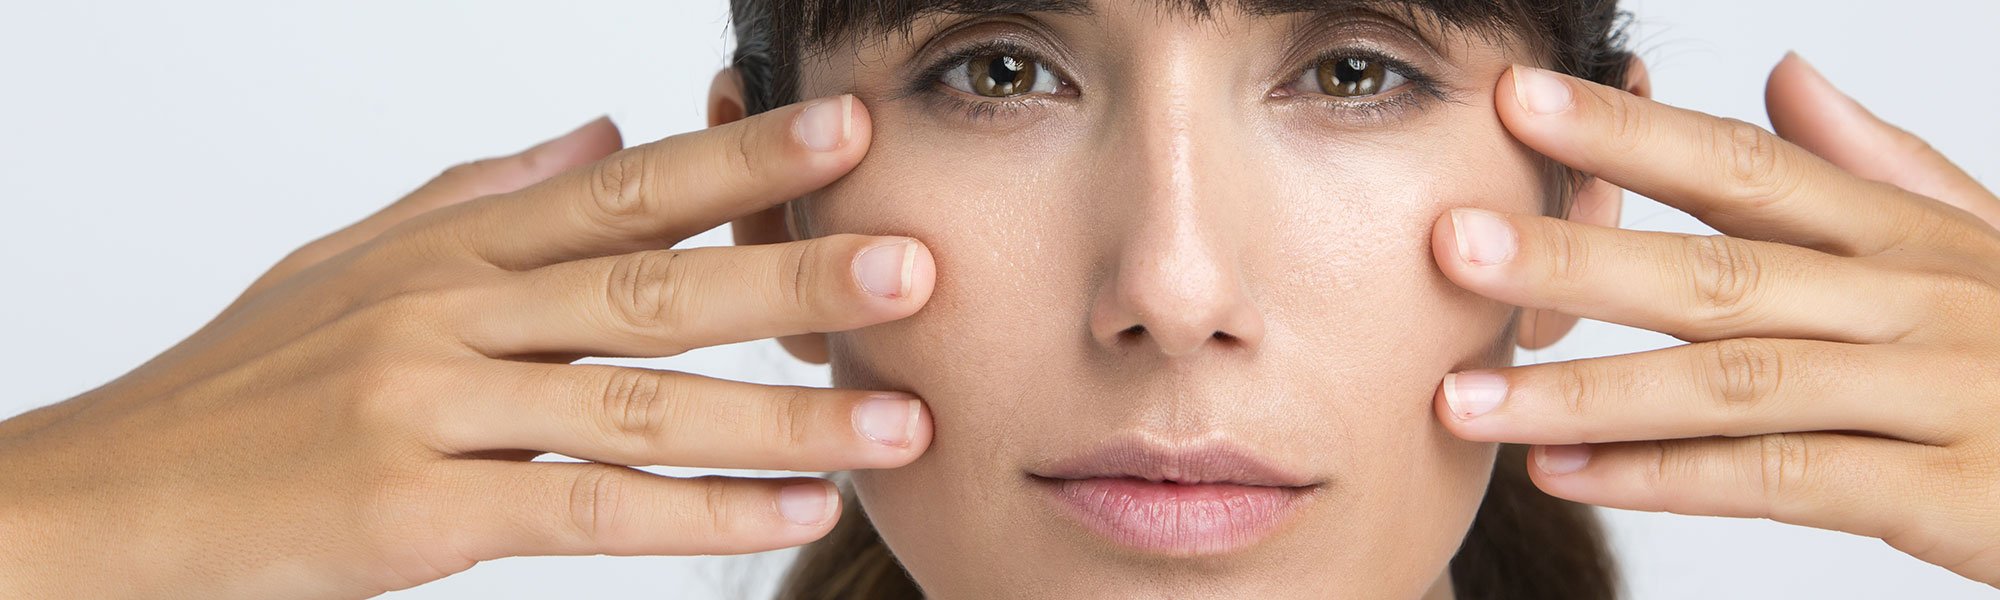 En tu rutina facial diaria a los 30 años no pueden faltar ni el ácido hialurónico ni el retinol ni el colágeno. Apórtalos desde fuera con las distintas gamas de cuidado de L’Oréal Paris.